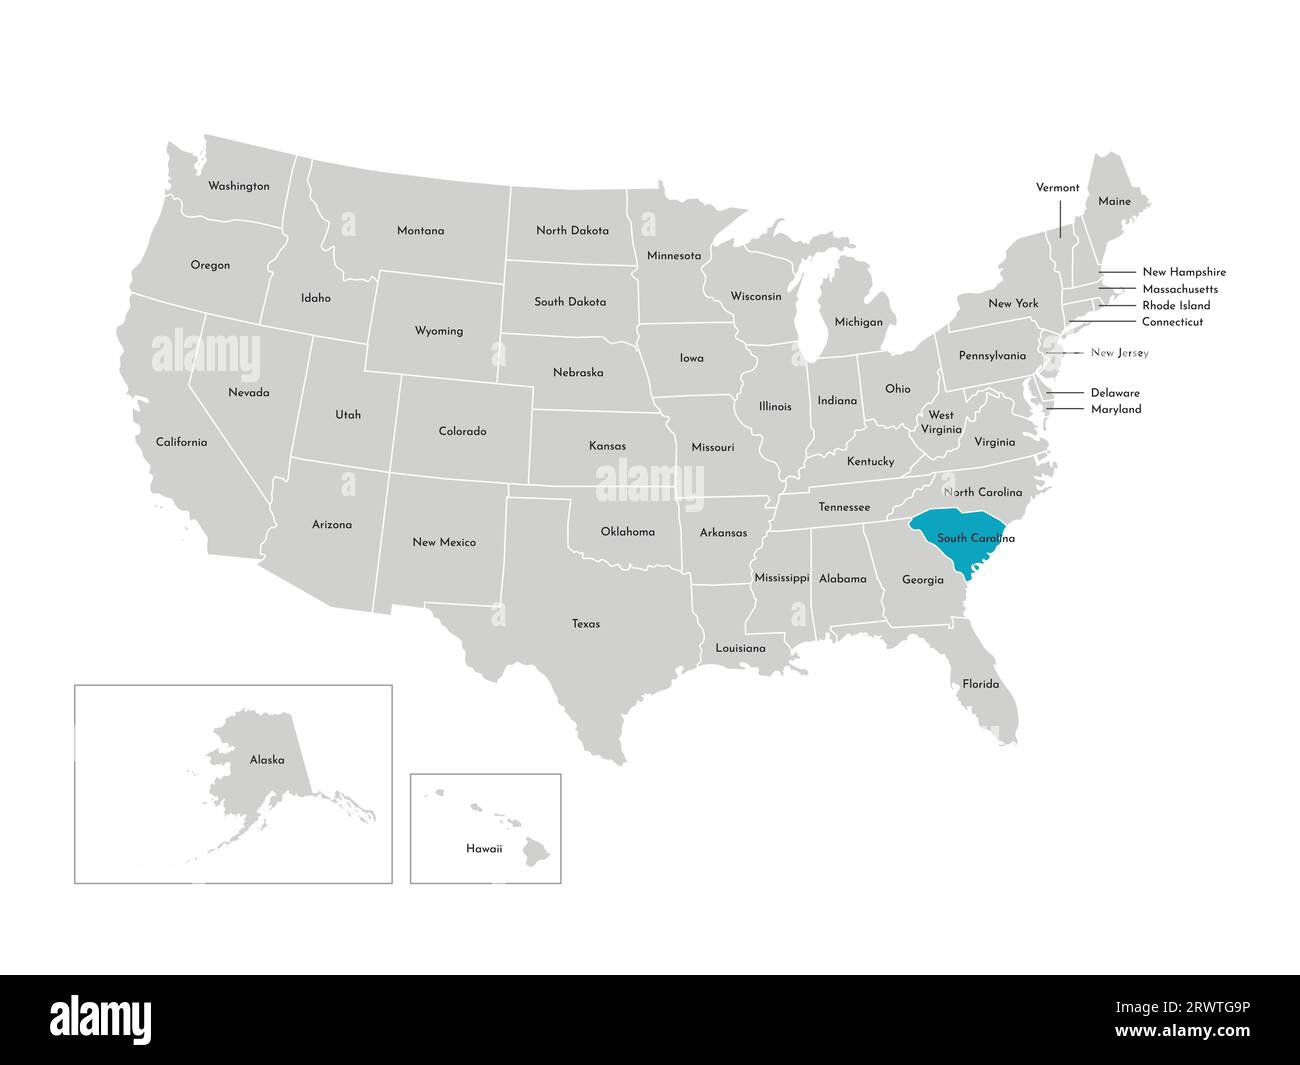 Vektor-isolierte Illustration einer vereinfachten Verwaltungskarte der USA. Grenzen der staaten mit Namen. Blaue Silhouette von South Carolina (Bundesstaat). Stock Vektor